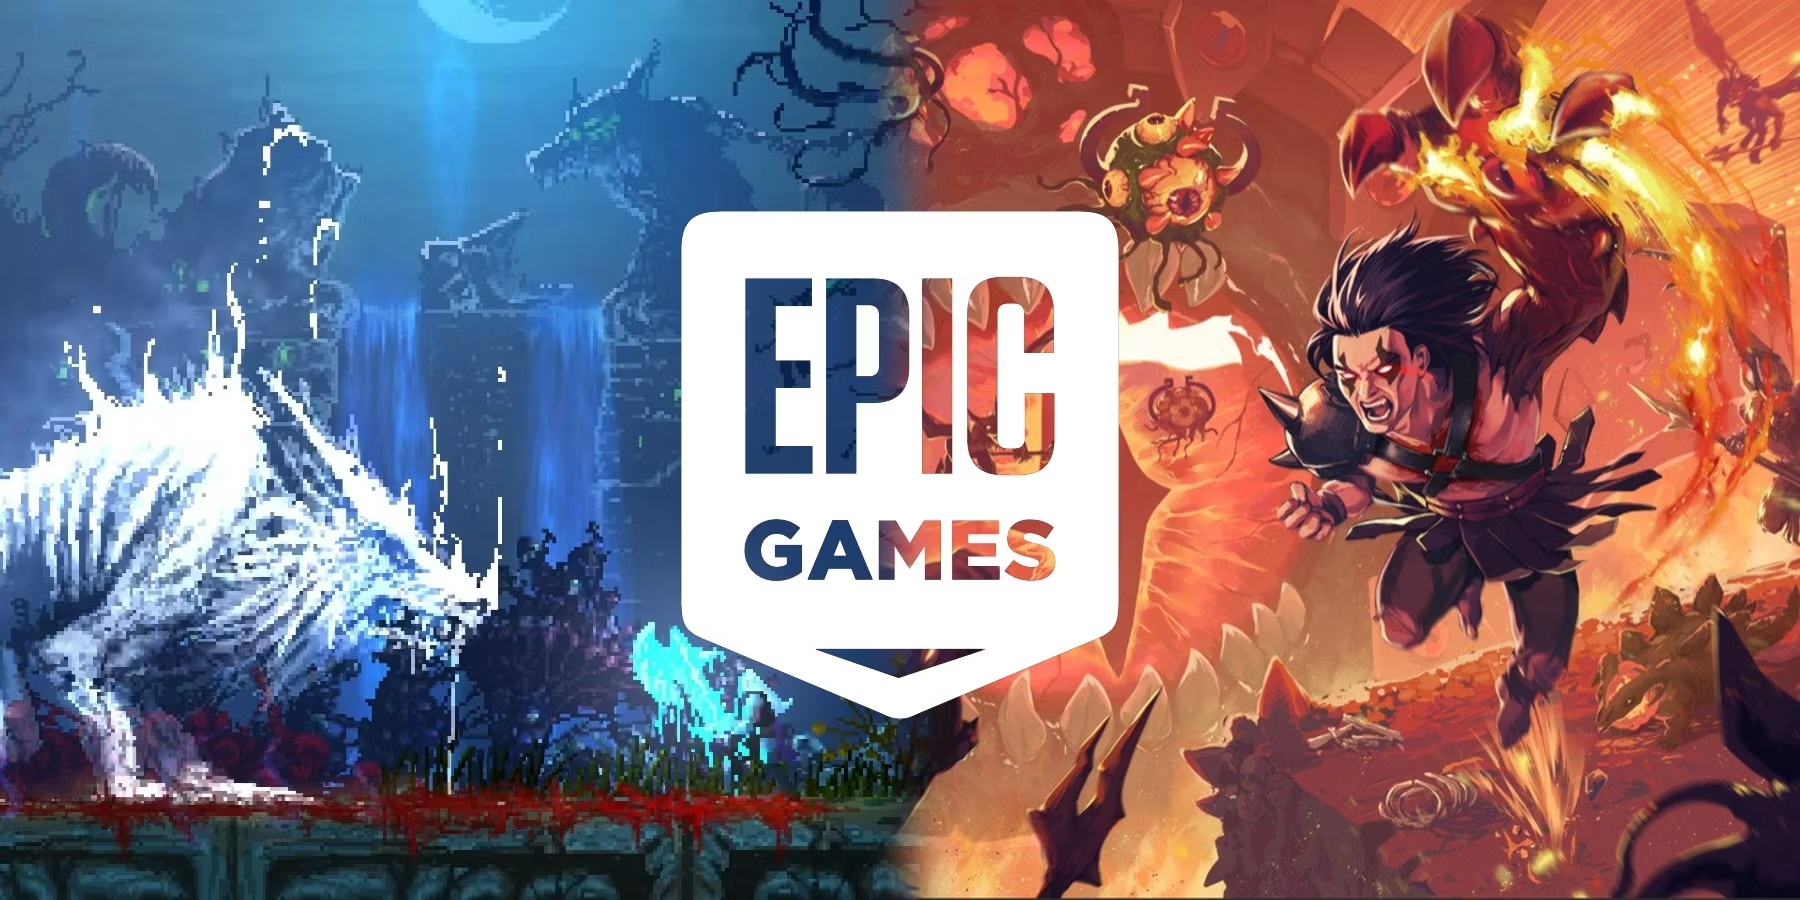 episka spel veckans gratis spel (6 oktober)